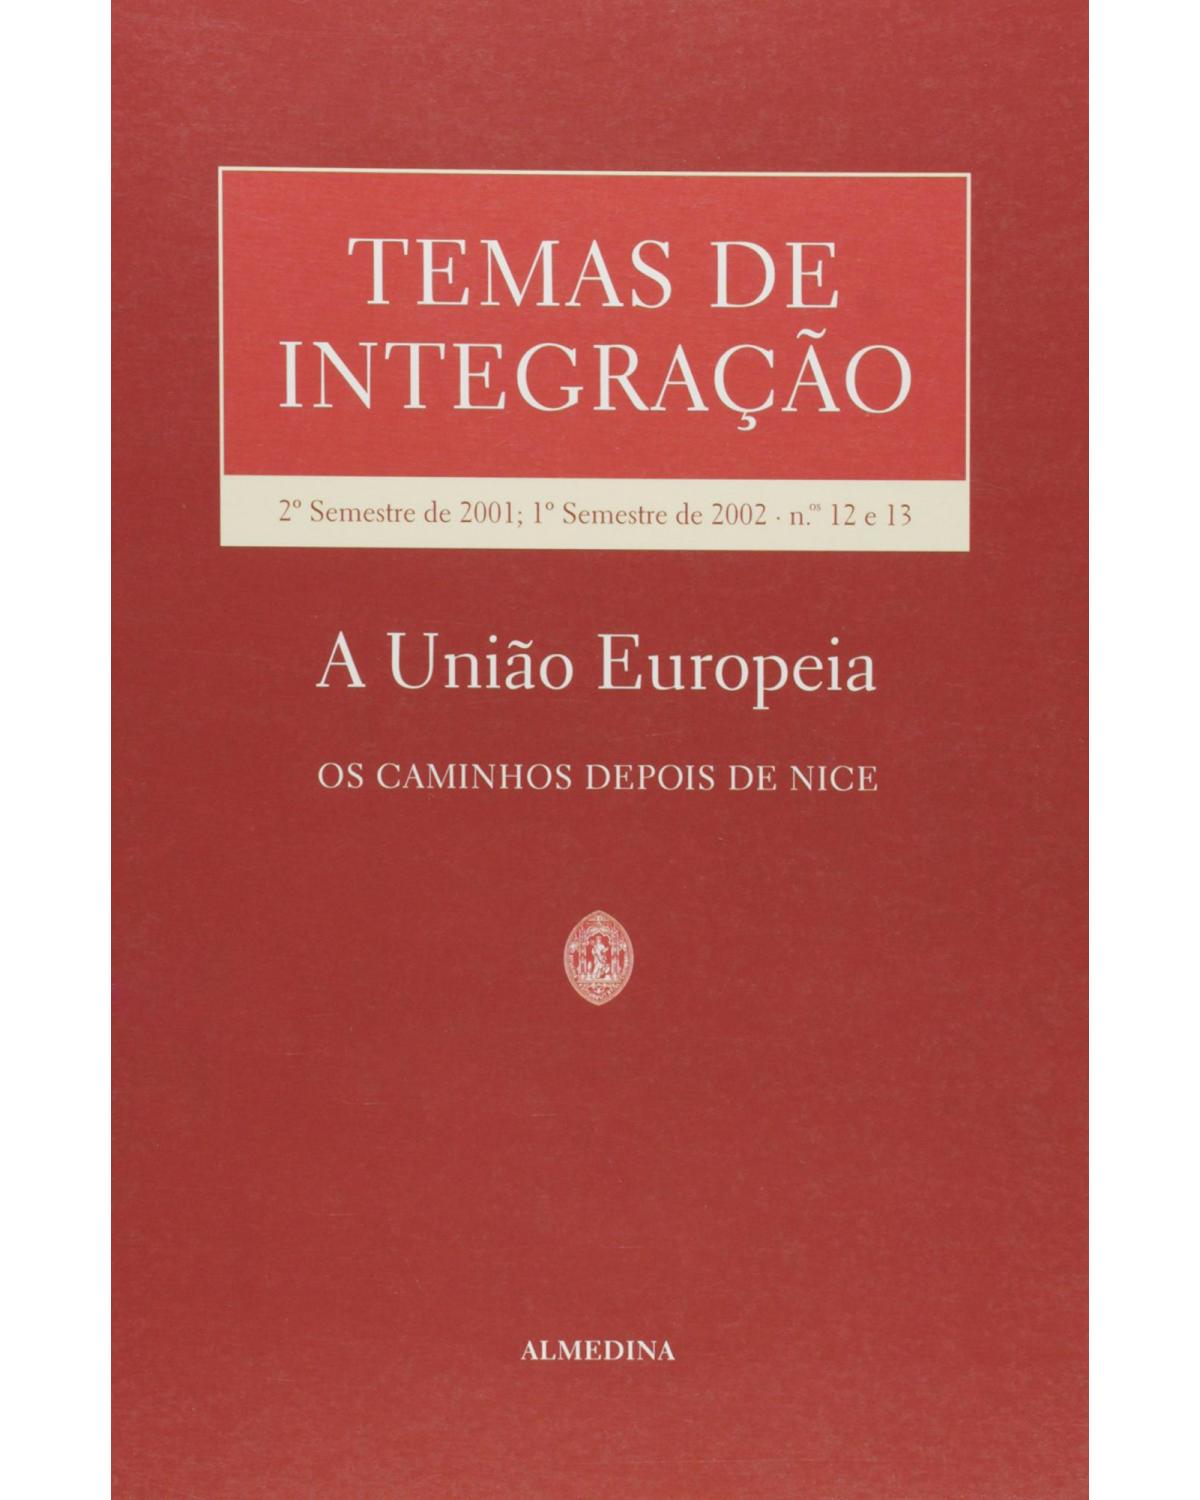 Temas de integração - nºs 12 e 13 - 2º semestre de 2001, 1º semestre de 2002 - A União Europeia - 1ª Edição | 2002